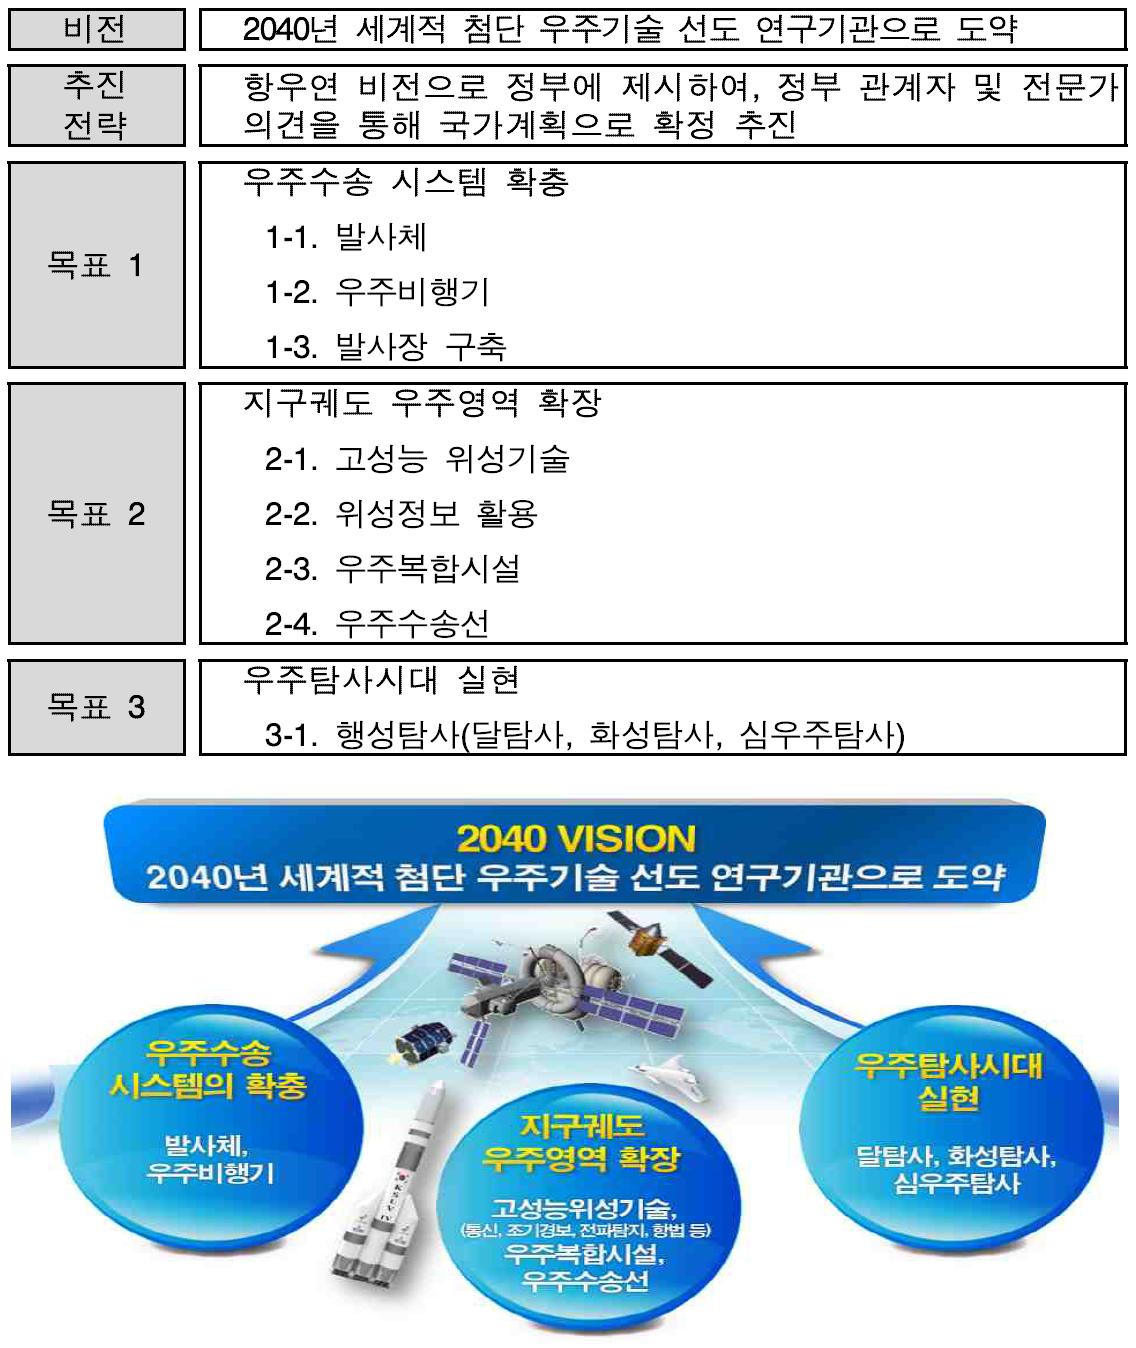 한국항공우주연구원 우주비전 및 세부 목표